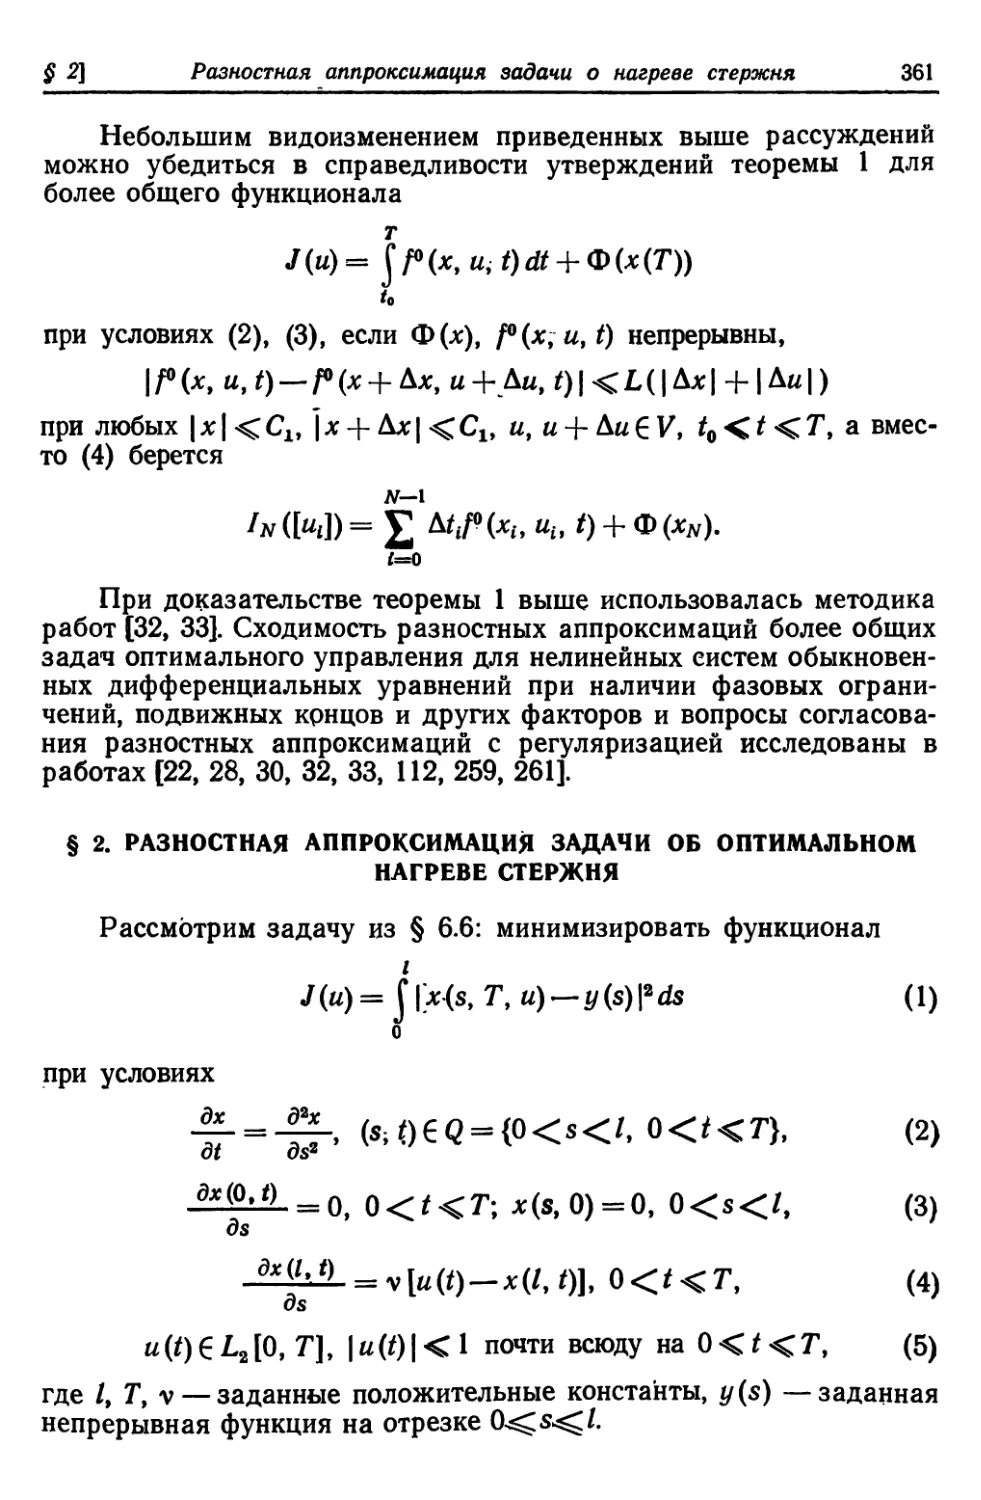 § 2. Разностная аппроксимация задачи об оптимальном нагреве стержня